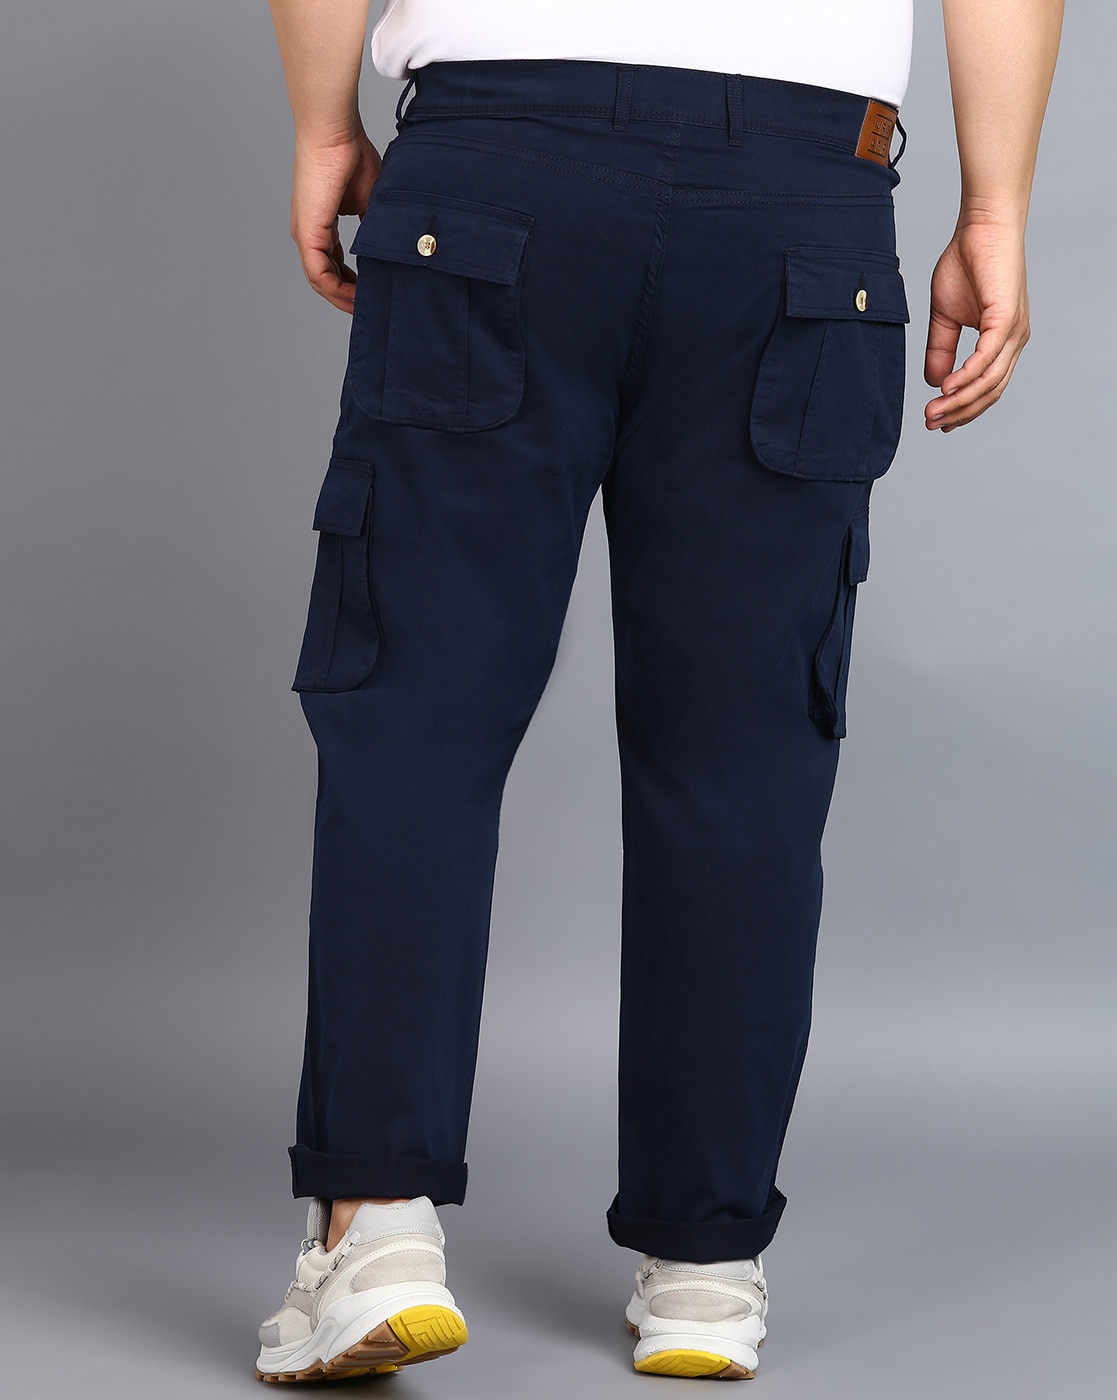 Buy Navy Camo Cargo Pants For Men Online In India